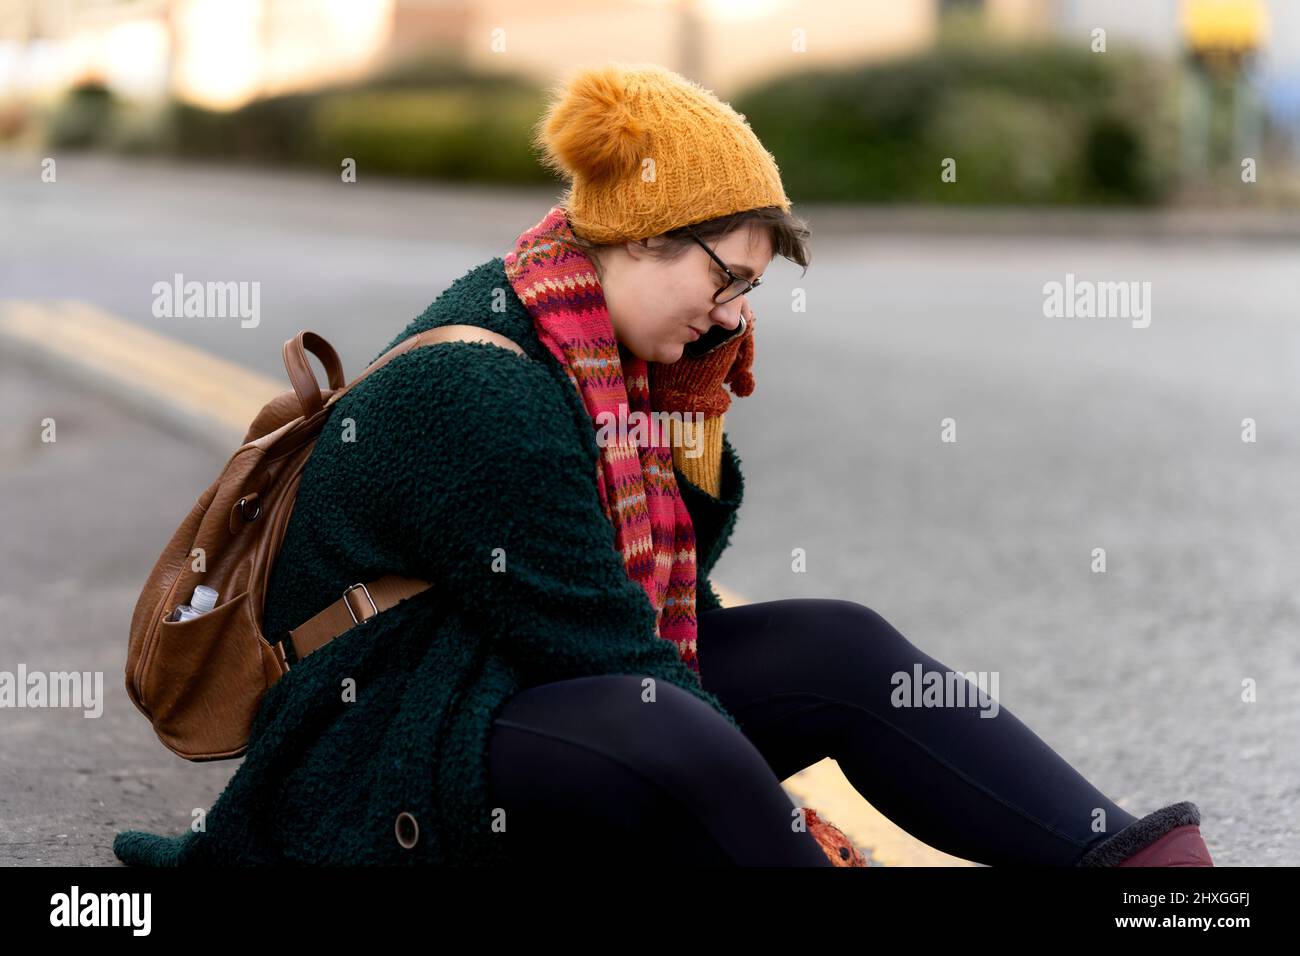 las mujeres jóvenes 20-25 se sentaron en conversaciones al borde de la carretera en el teléfono móvil las mujeres llevan sombrero de lana y bufanda con mochila en su espalda Foto de stock